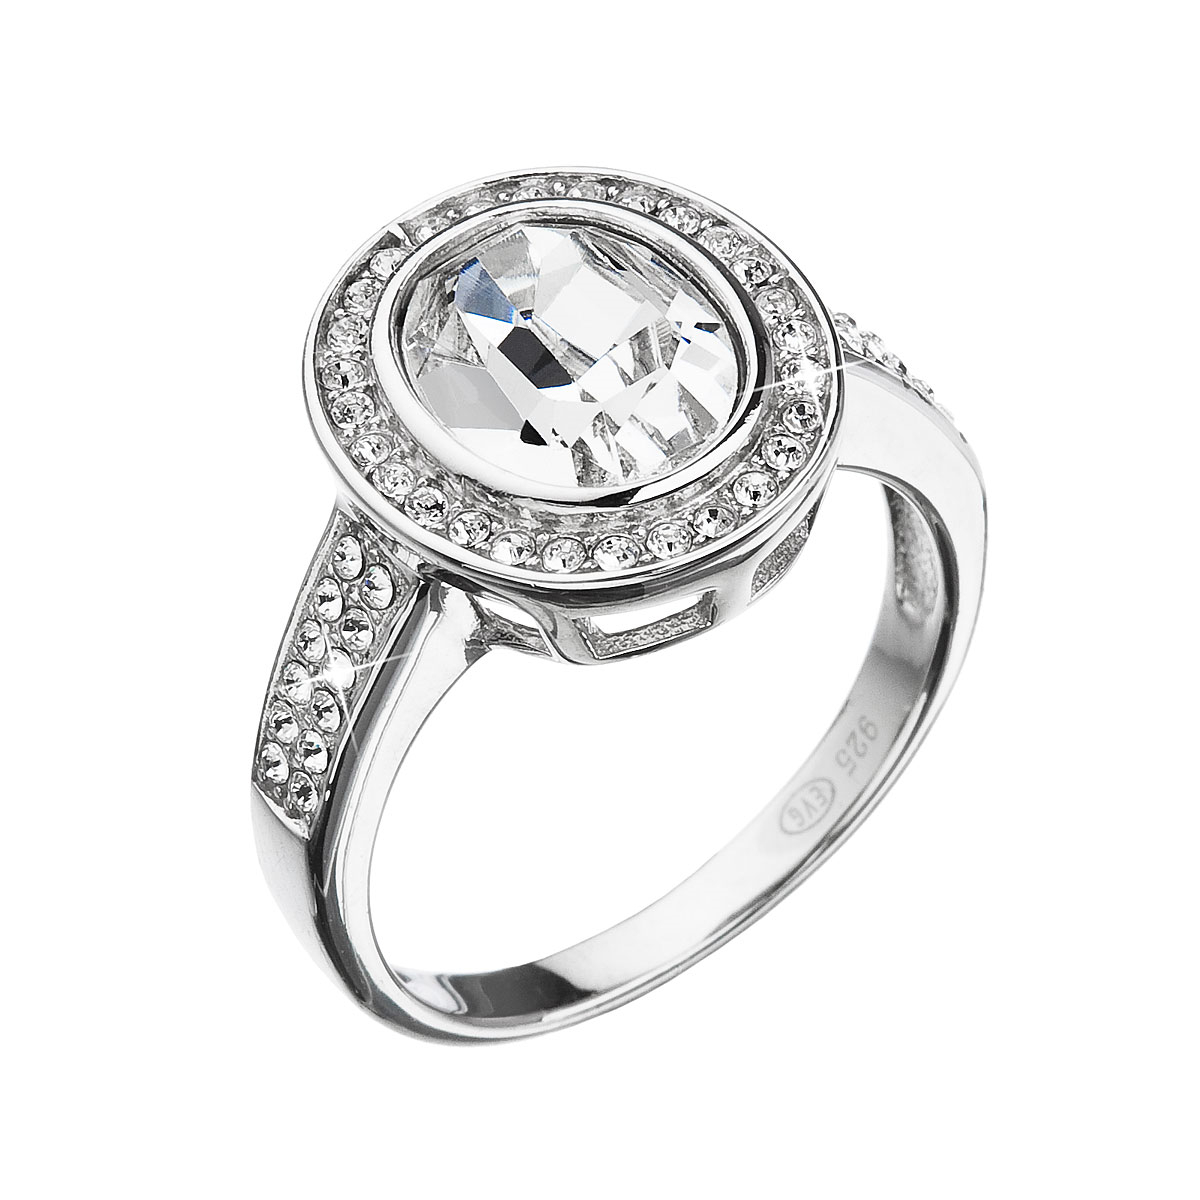 Strieborný prsteň s kryštálmi Swarovski biely